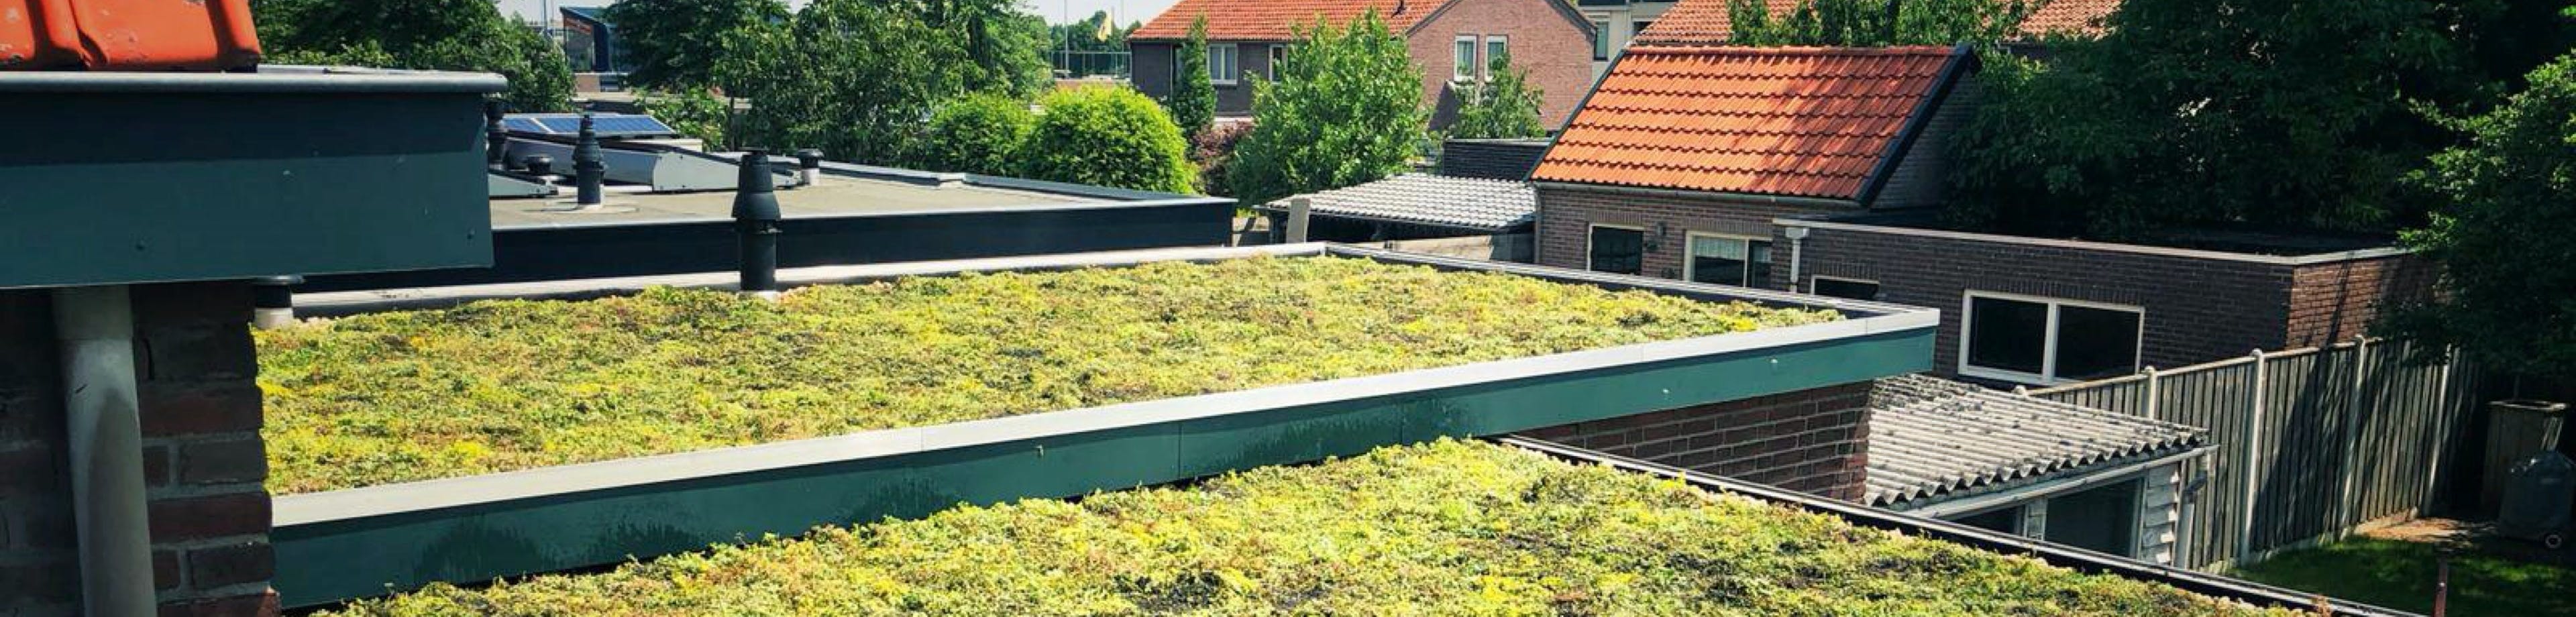 Een groen dak met sedumplantjes